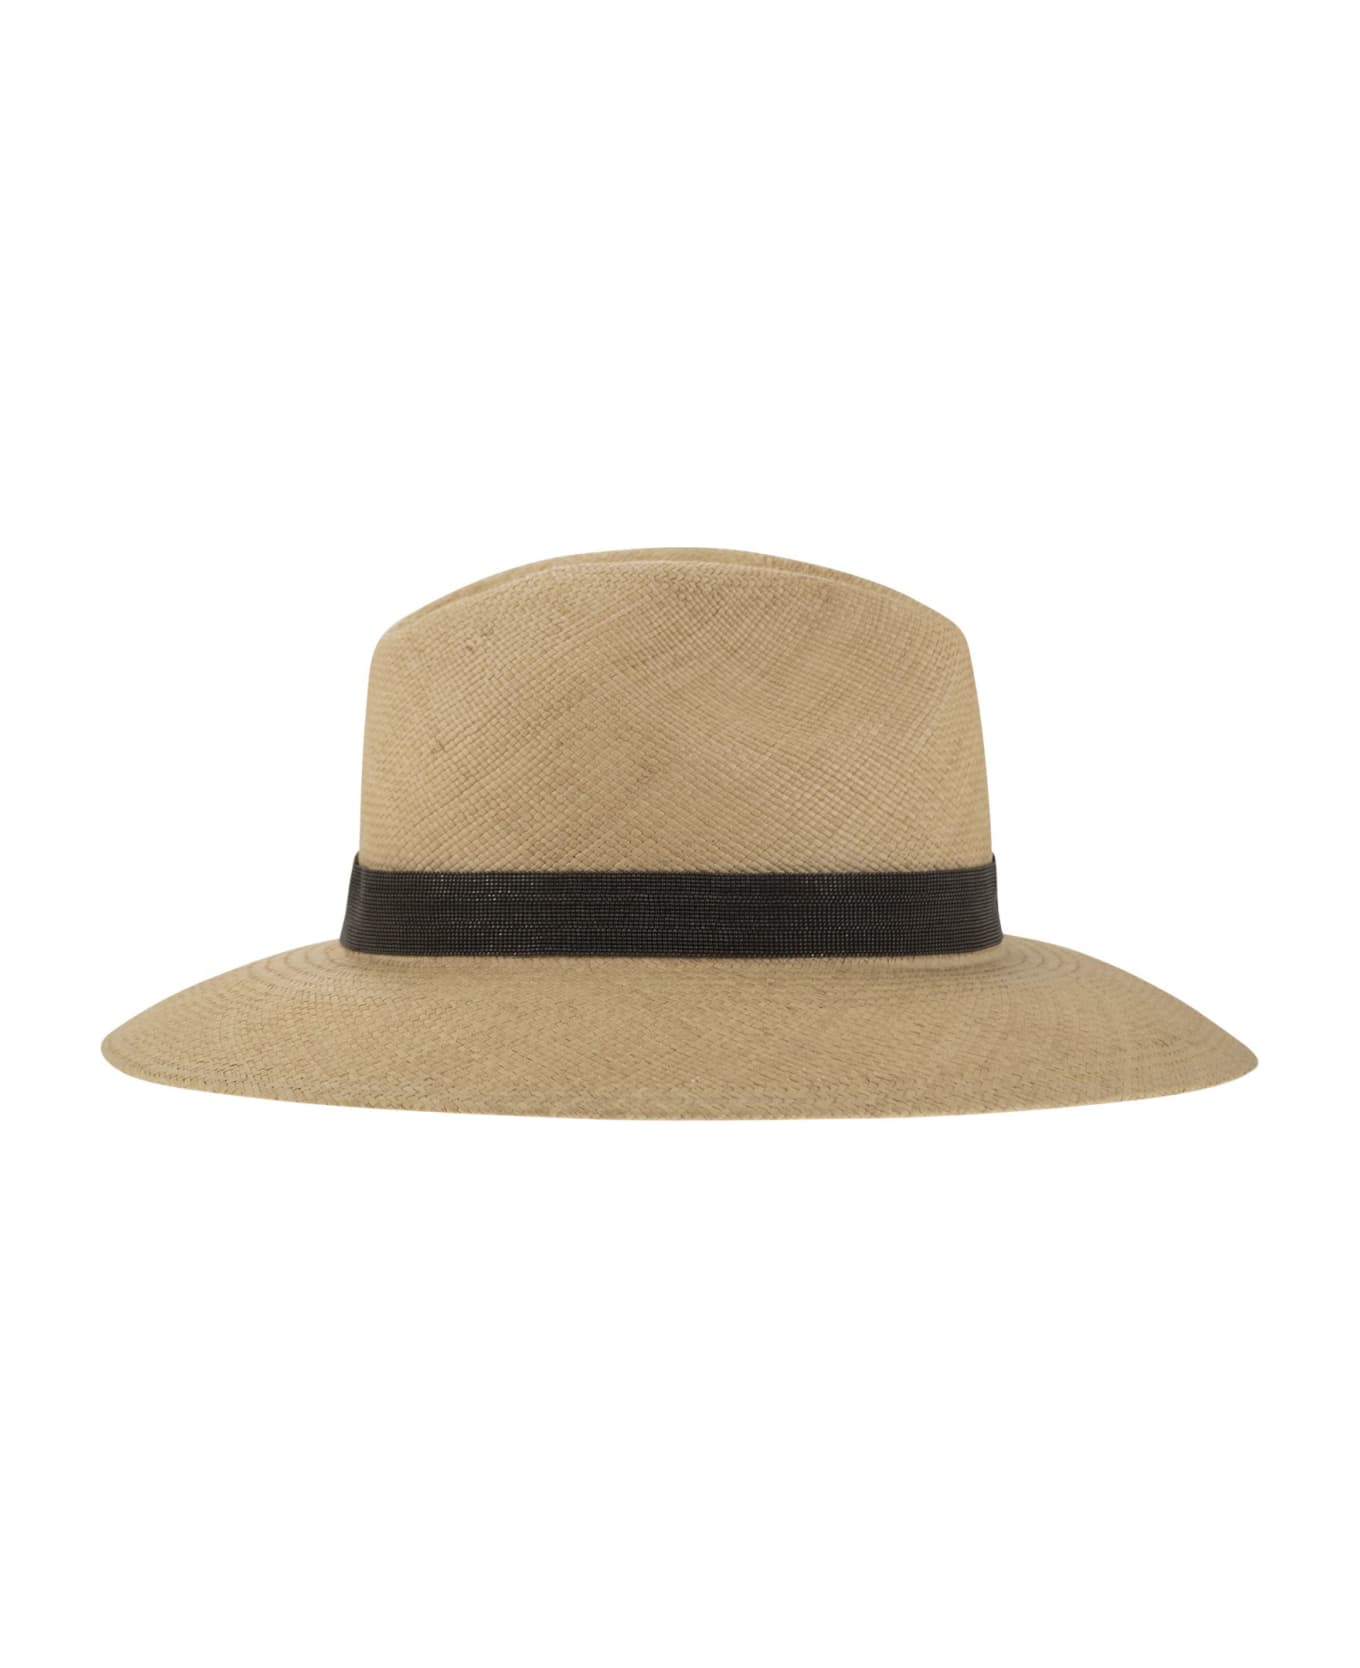 Brunello Cucinelli Straw Hat With Precious Band - Beige